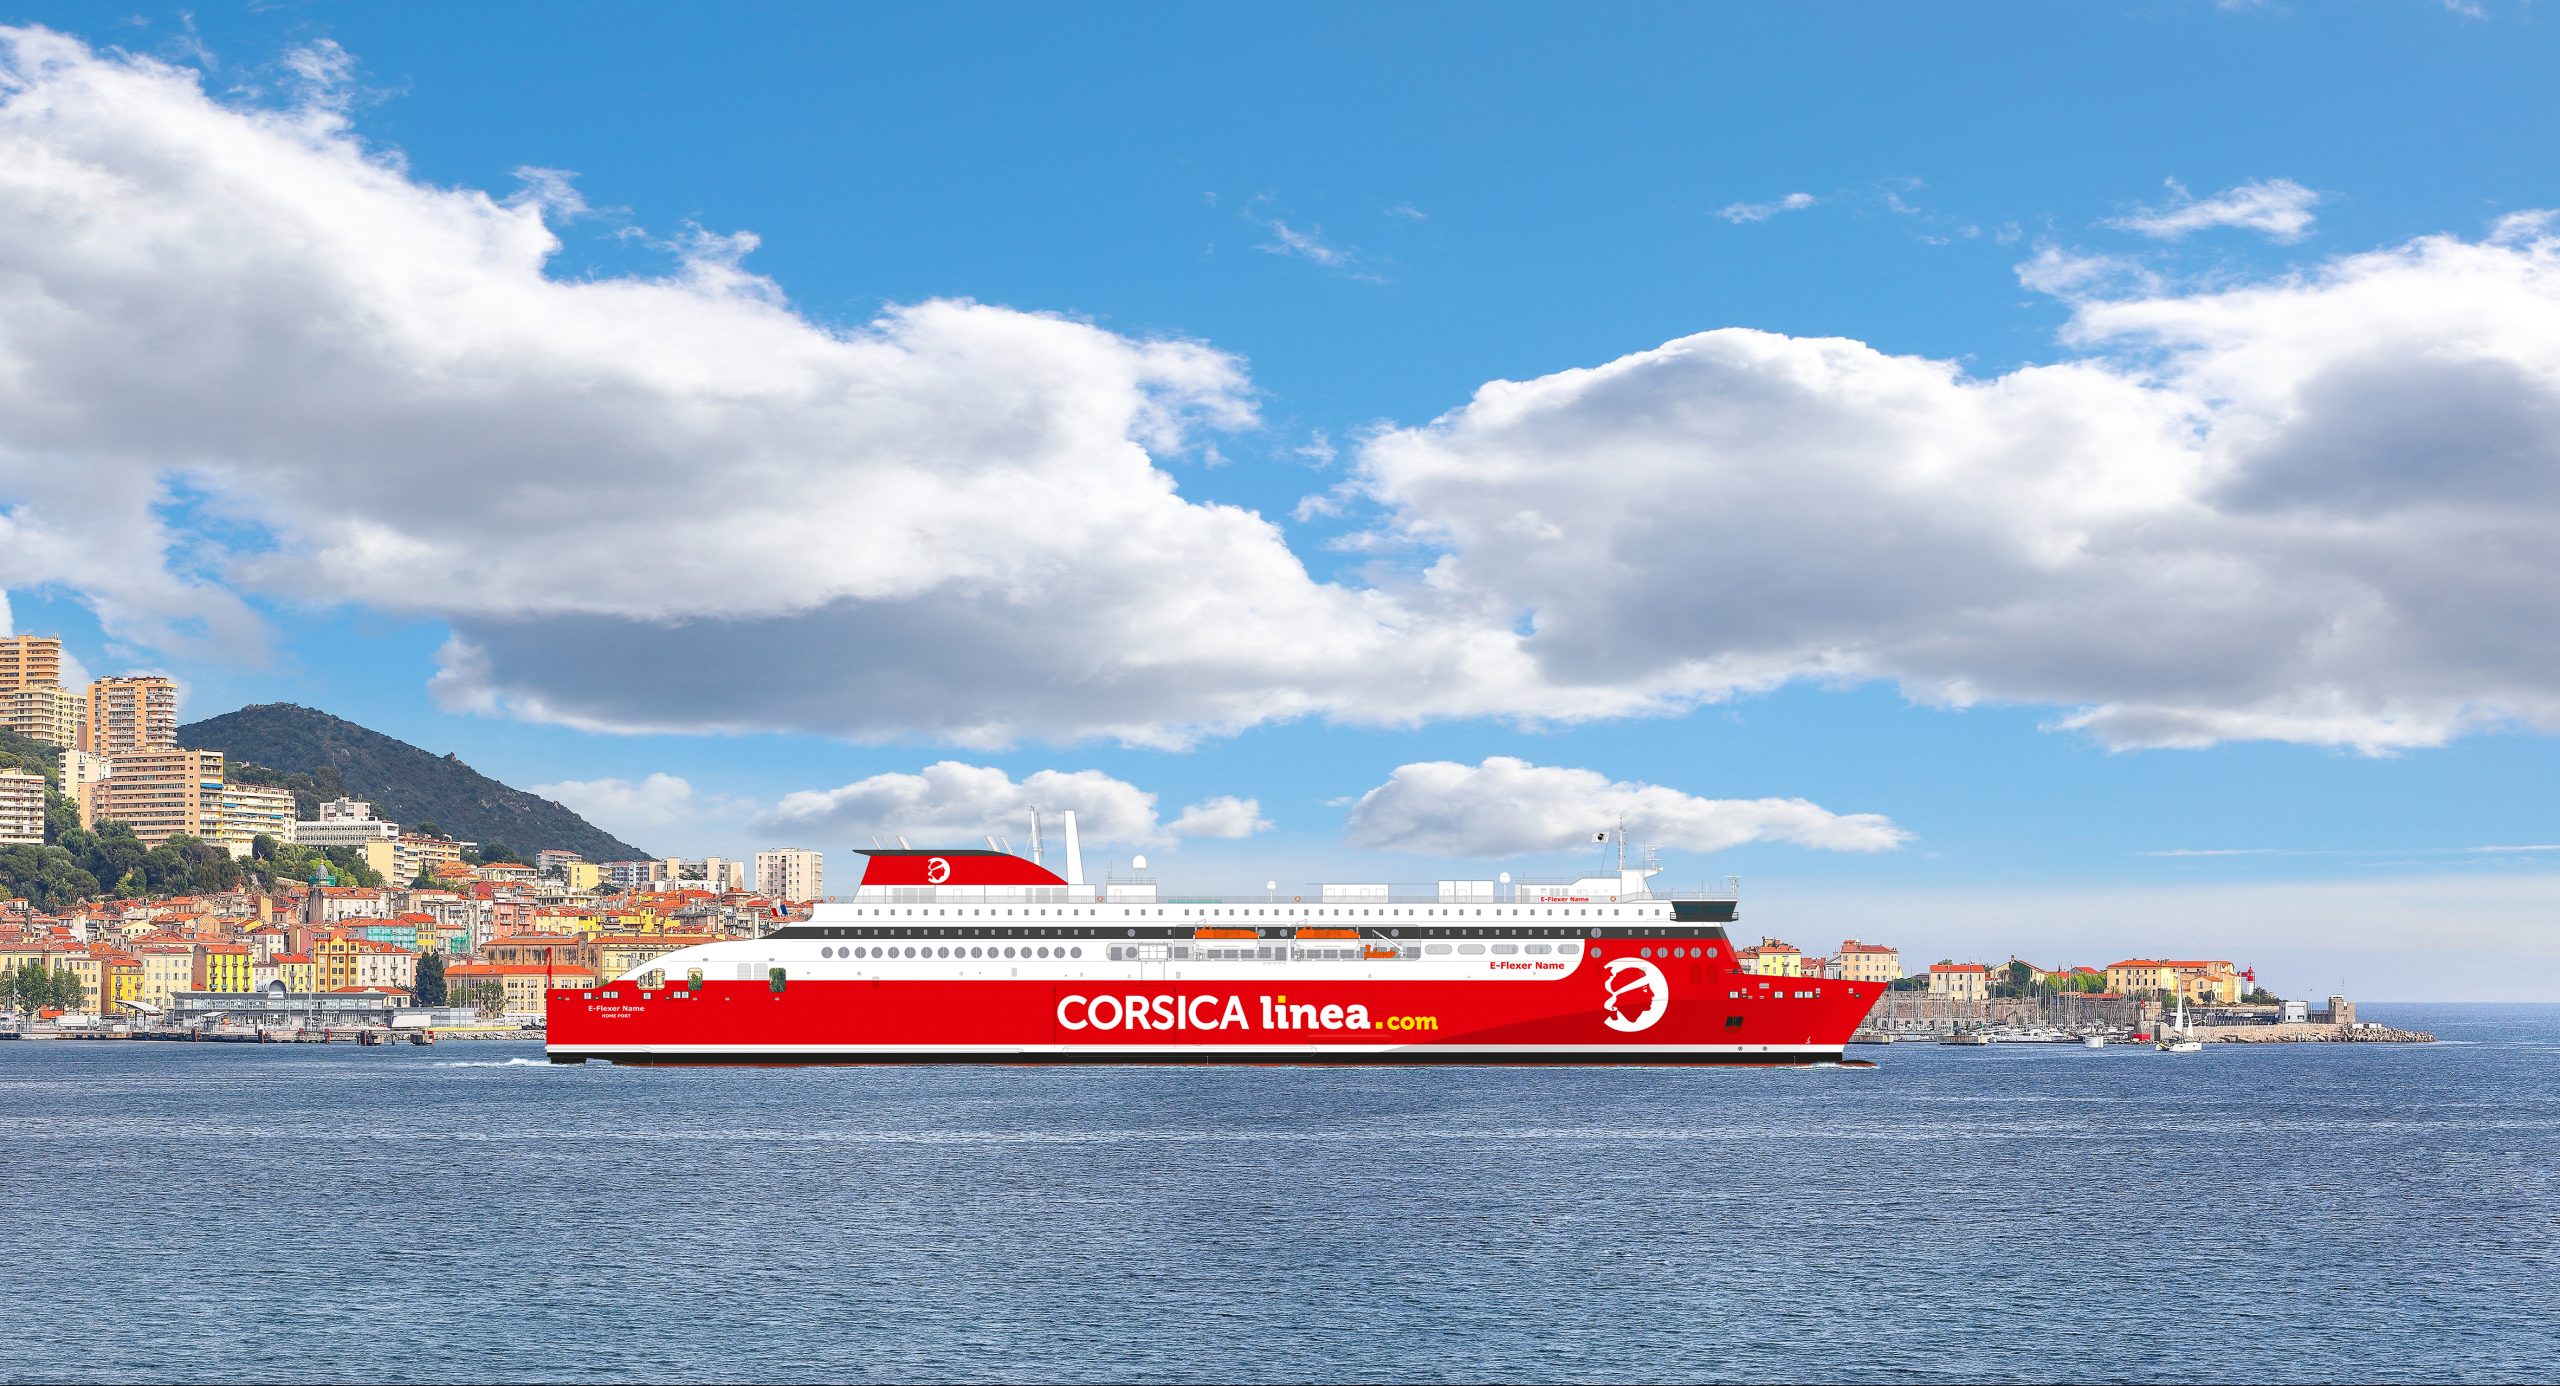 CORSICA linea poursuit sa trajectoire de décarbonation et annonce l’arrivée d’un deuxième navire neuf propulsé au Gaz Naturel Liquéfié dès mars 2026